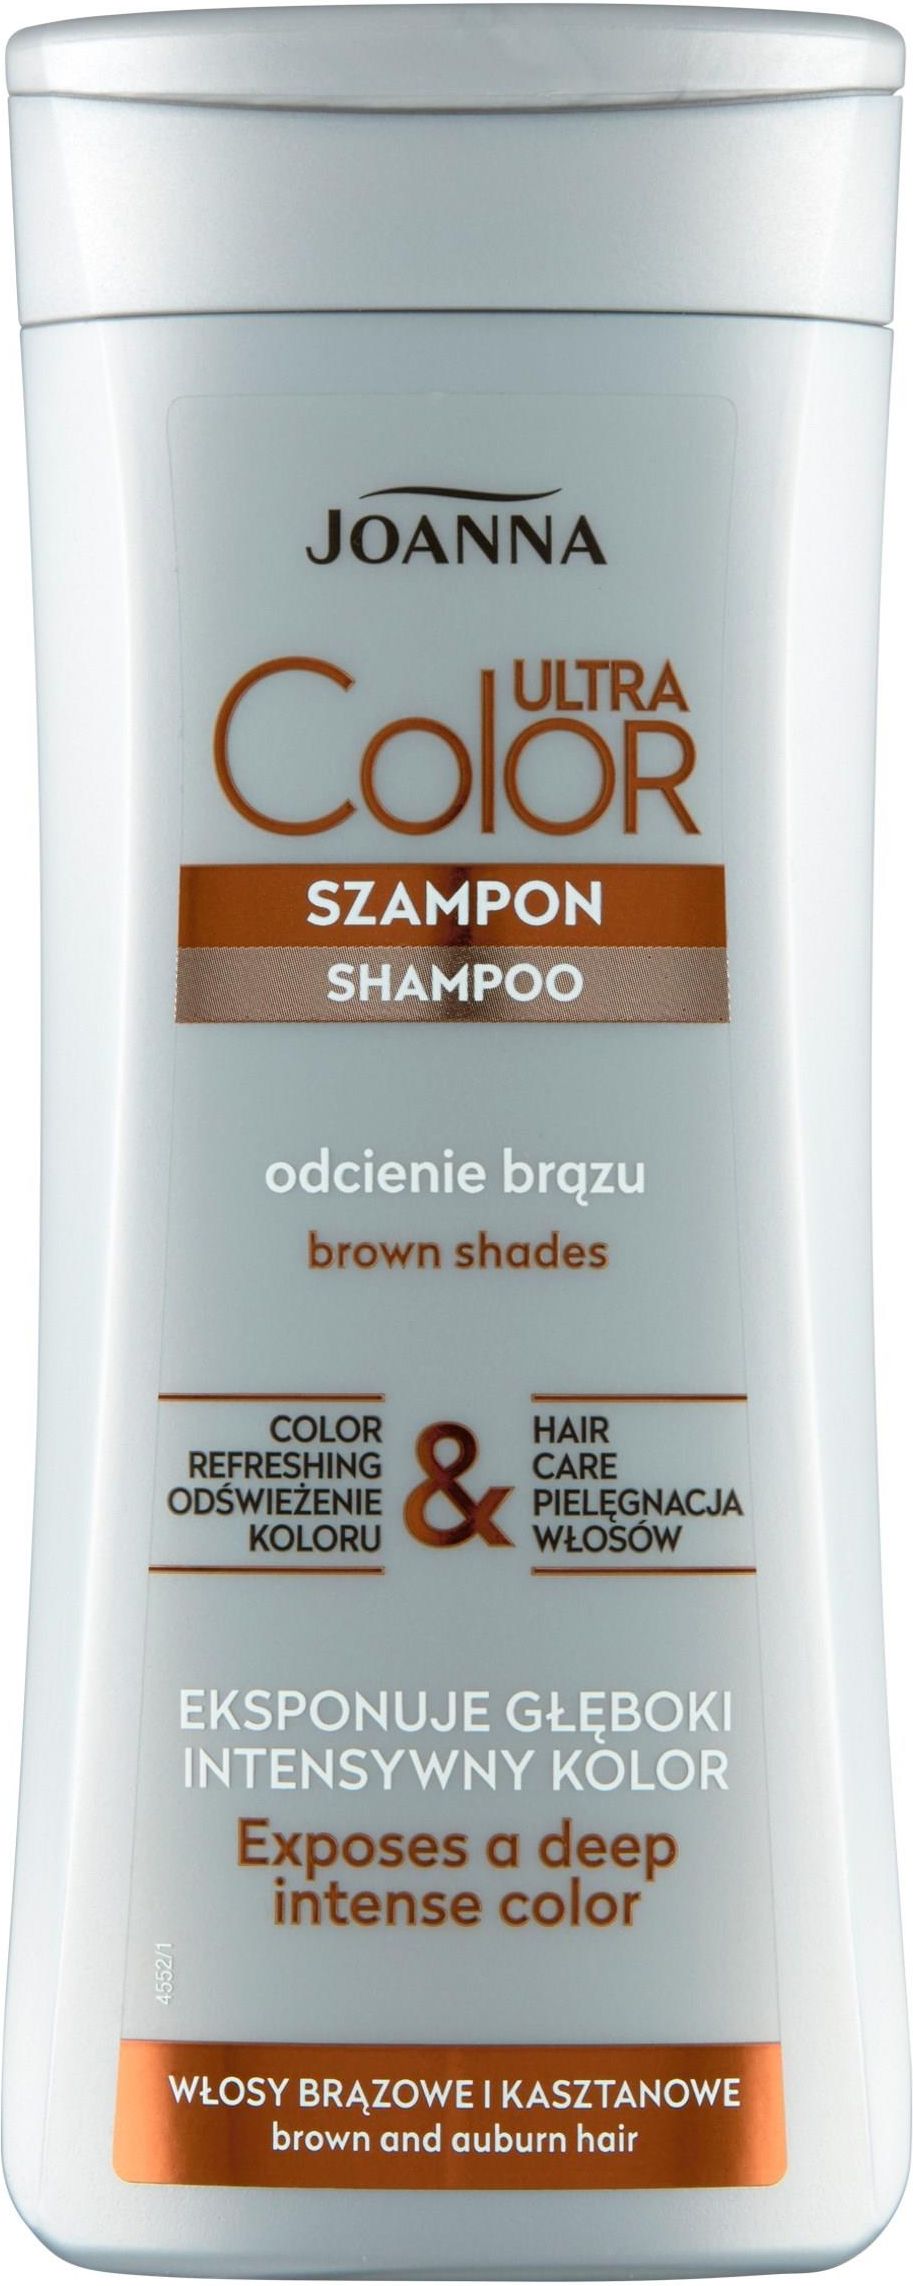 joanna szampon do włosów włosy brązowe kasztanowe opinie